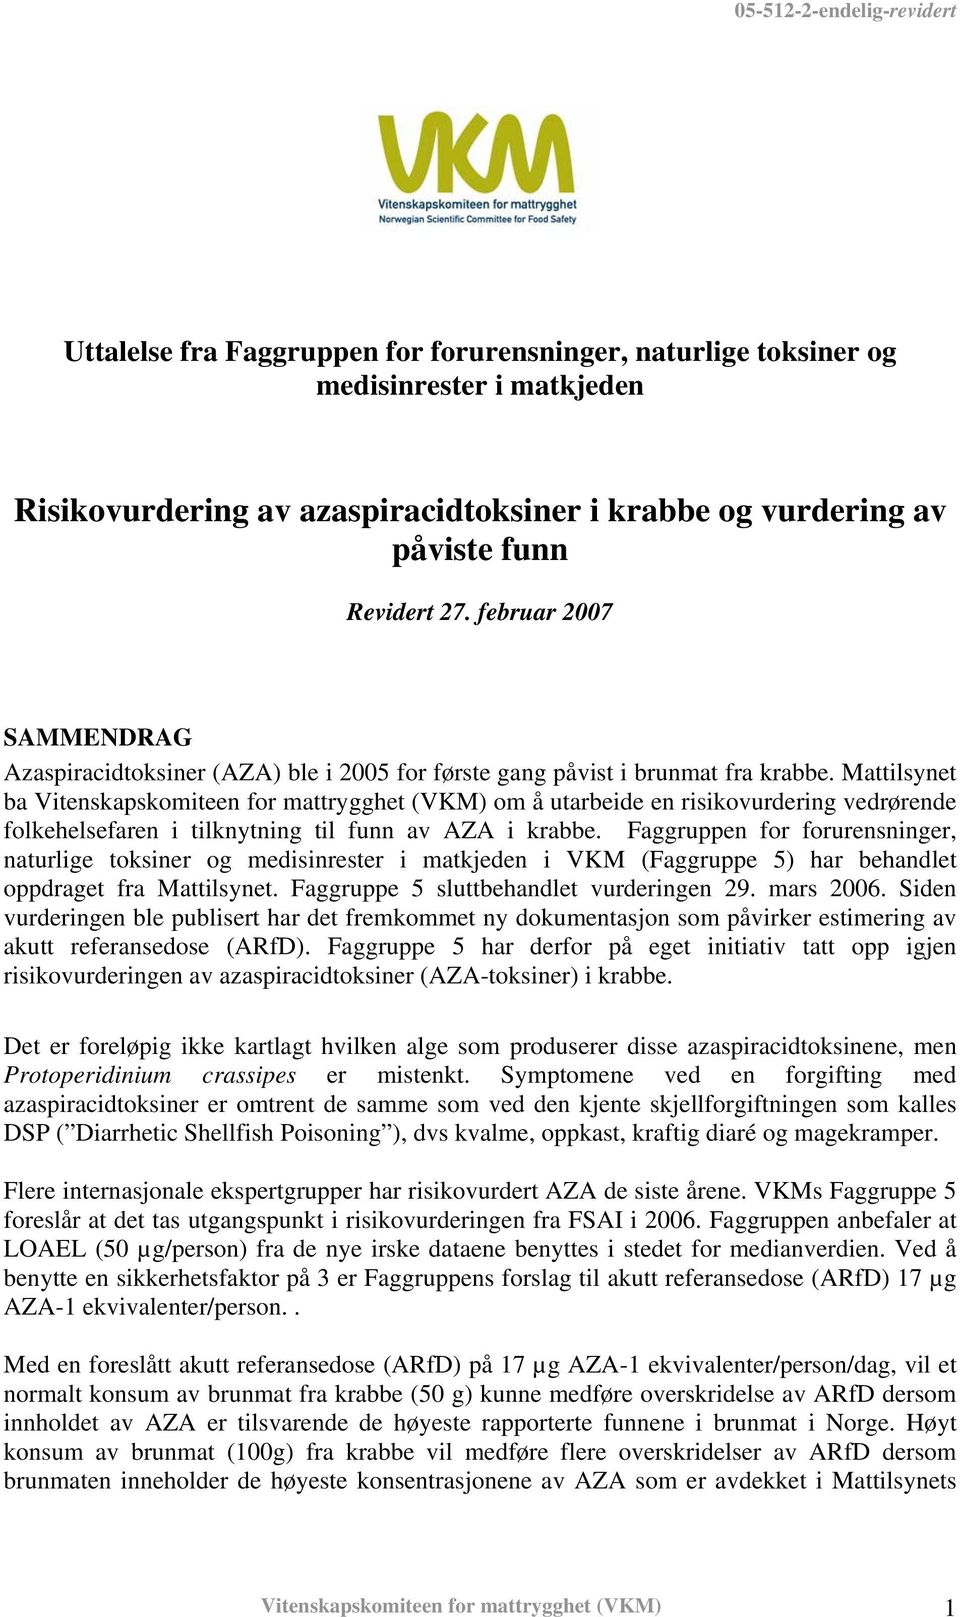 Mattilsynet ba Vitenskapskomiteen for mattrygghet (VKM) om å utarbeide en risikovurdering vedrørende folkehelsefaren i tilknytning til funn av AZA i krabbe.